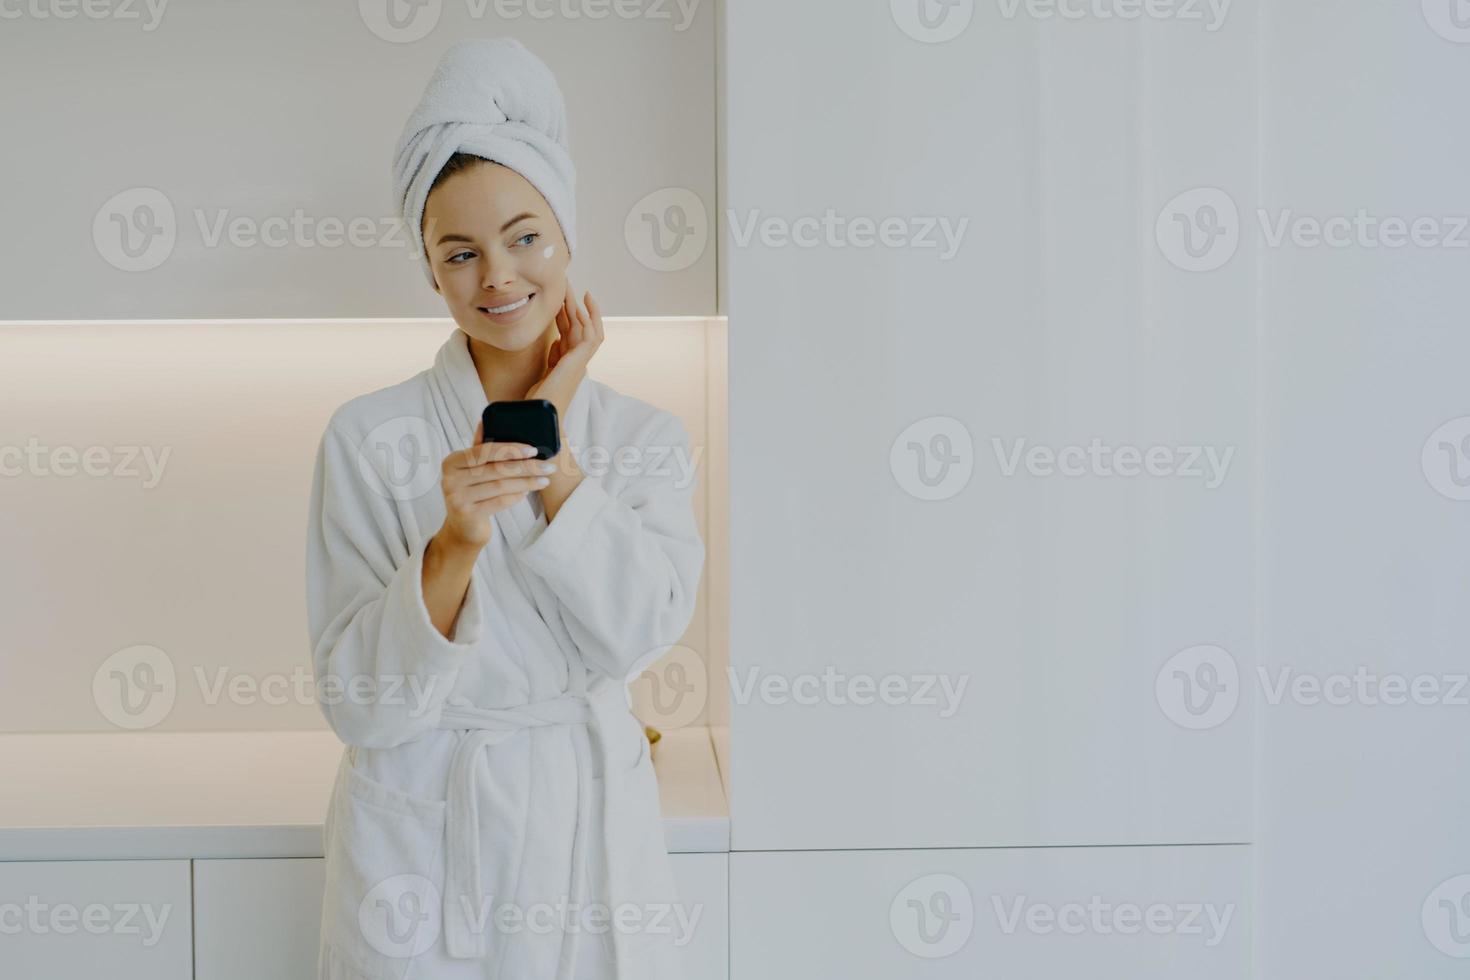 mulher atraente aplica creme hidratante no rosto cuida de sua tez e pele segura espelho usa roupão branco sorri gentilmente olha pensativamente posa sobre móveis modernos em casa foto